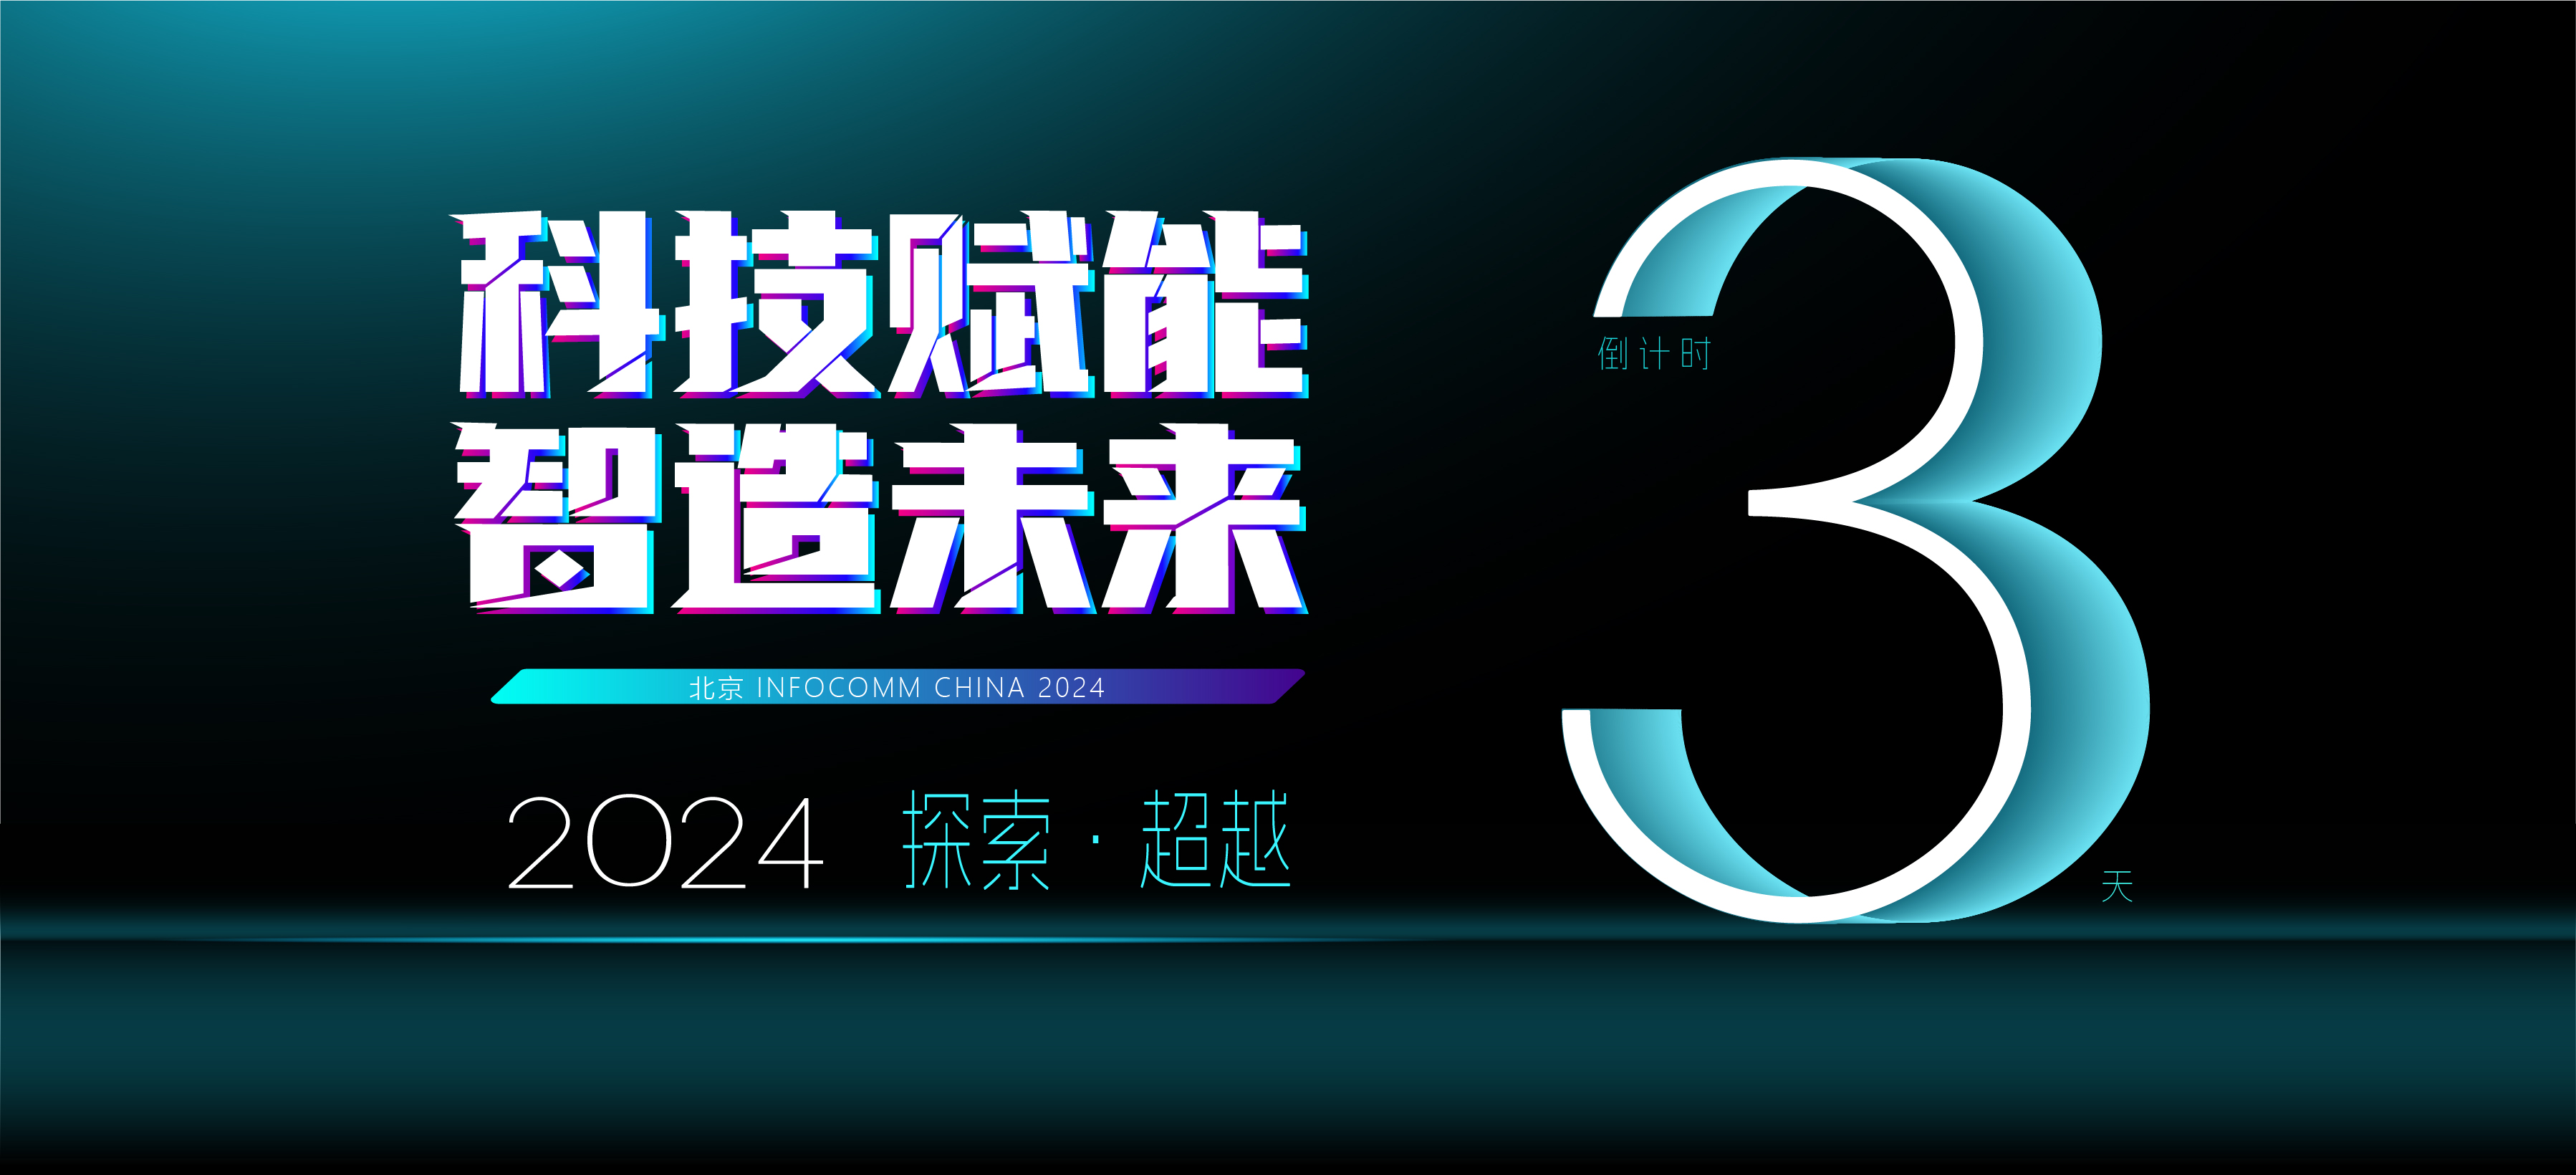 北京 infocomm China 2024 倒计时，3天后开启科技盛宴！